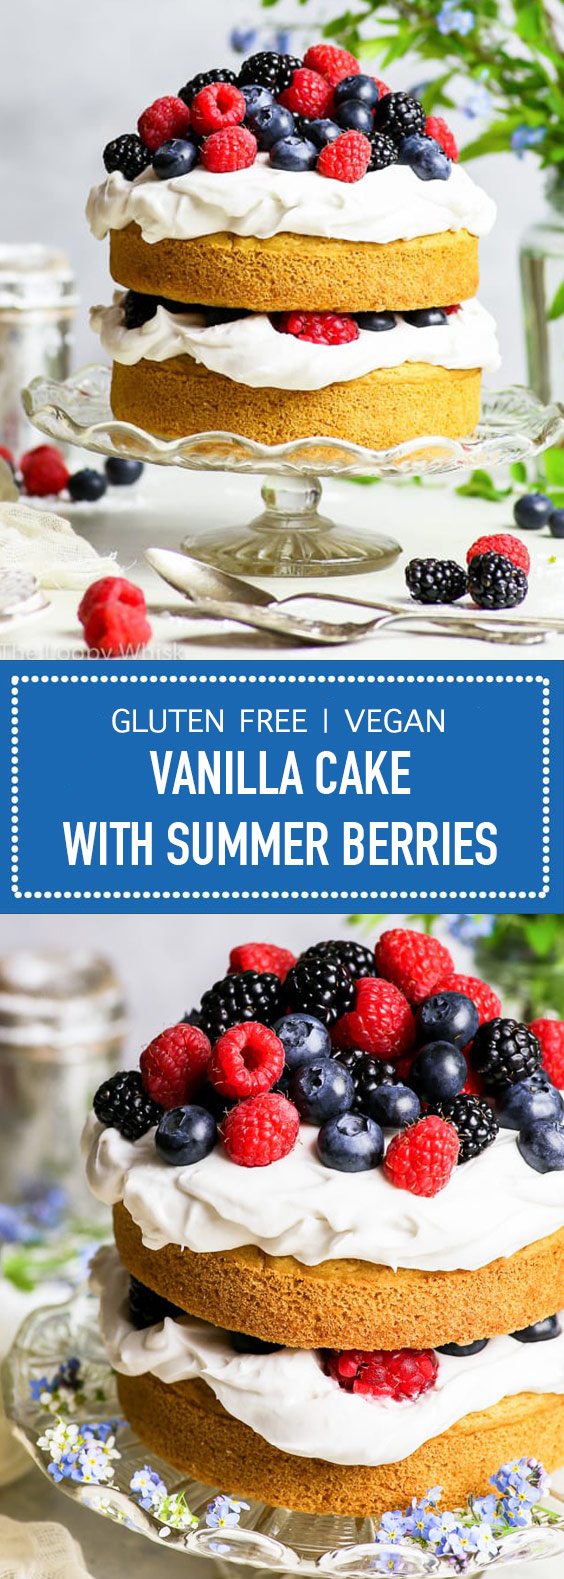 Gluten Free + Vegan Vanilla Cake with Summer Berries